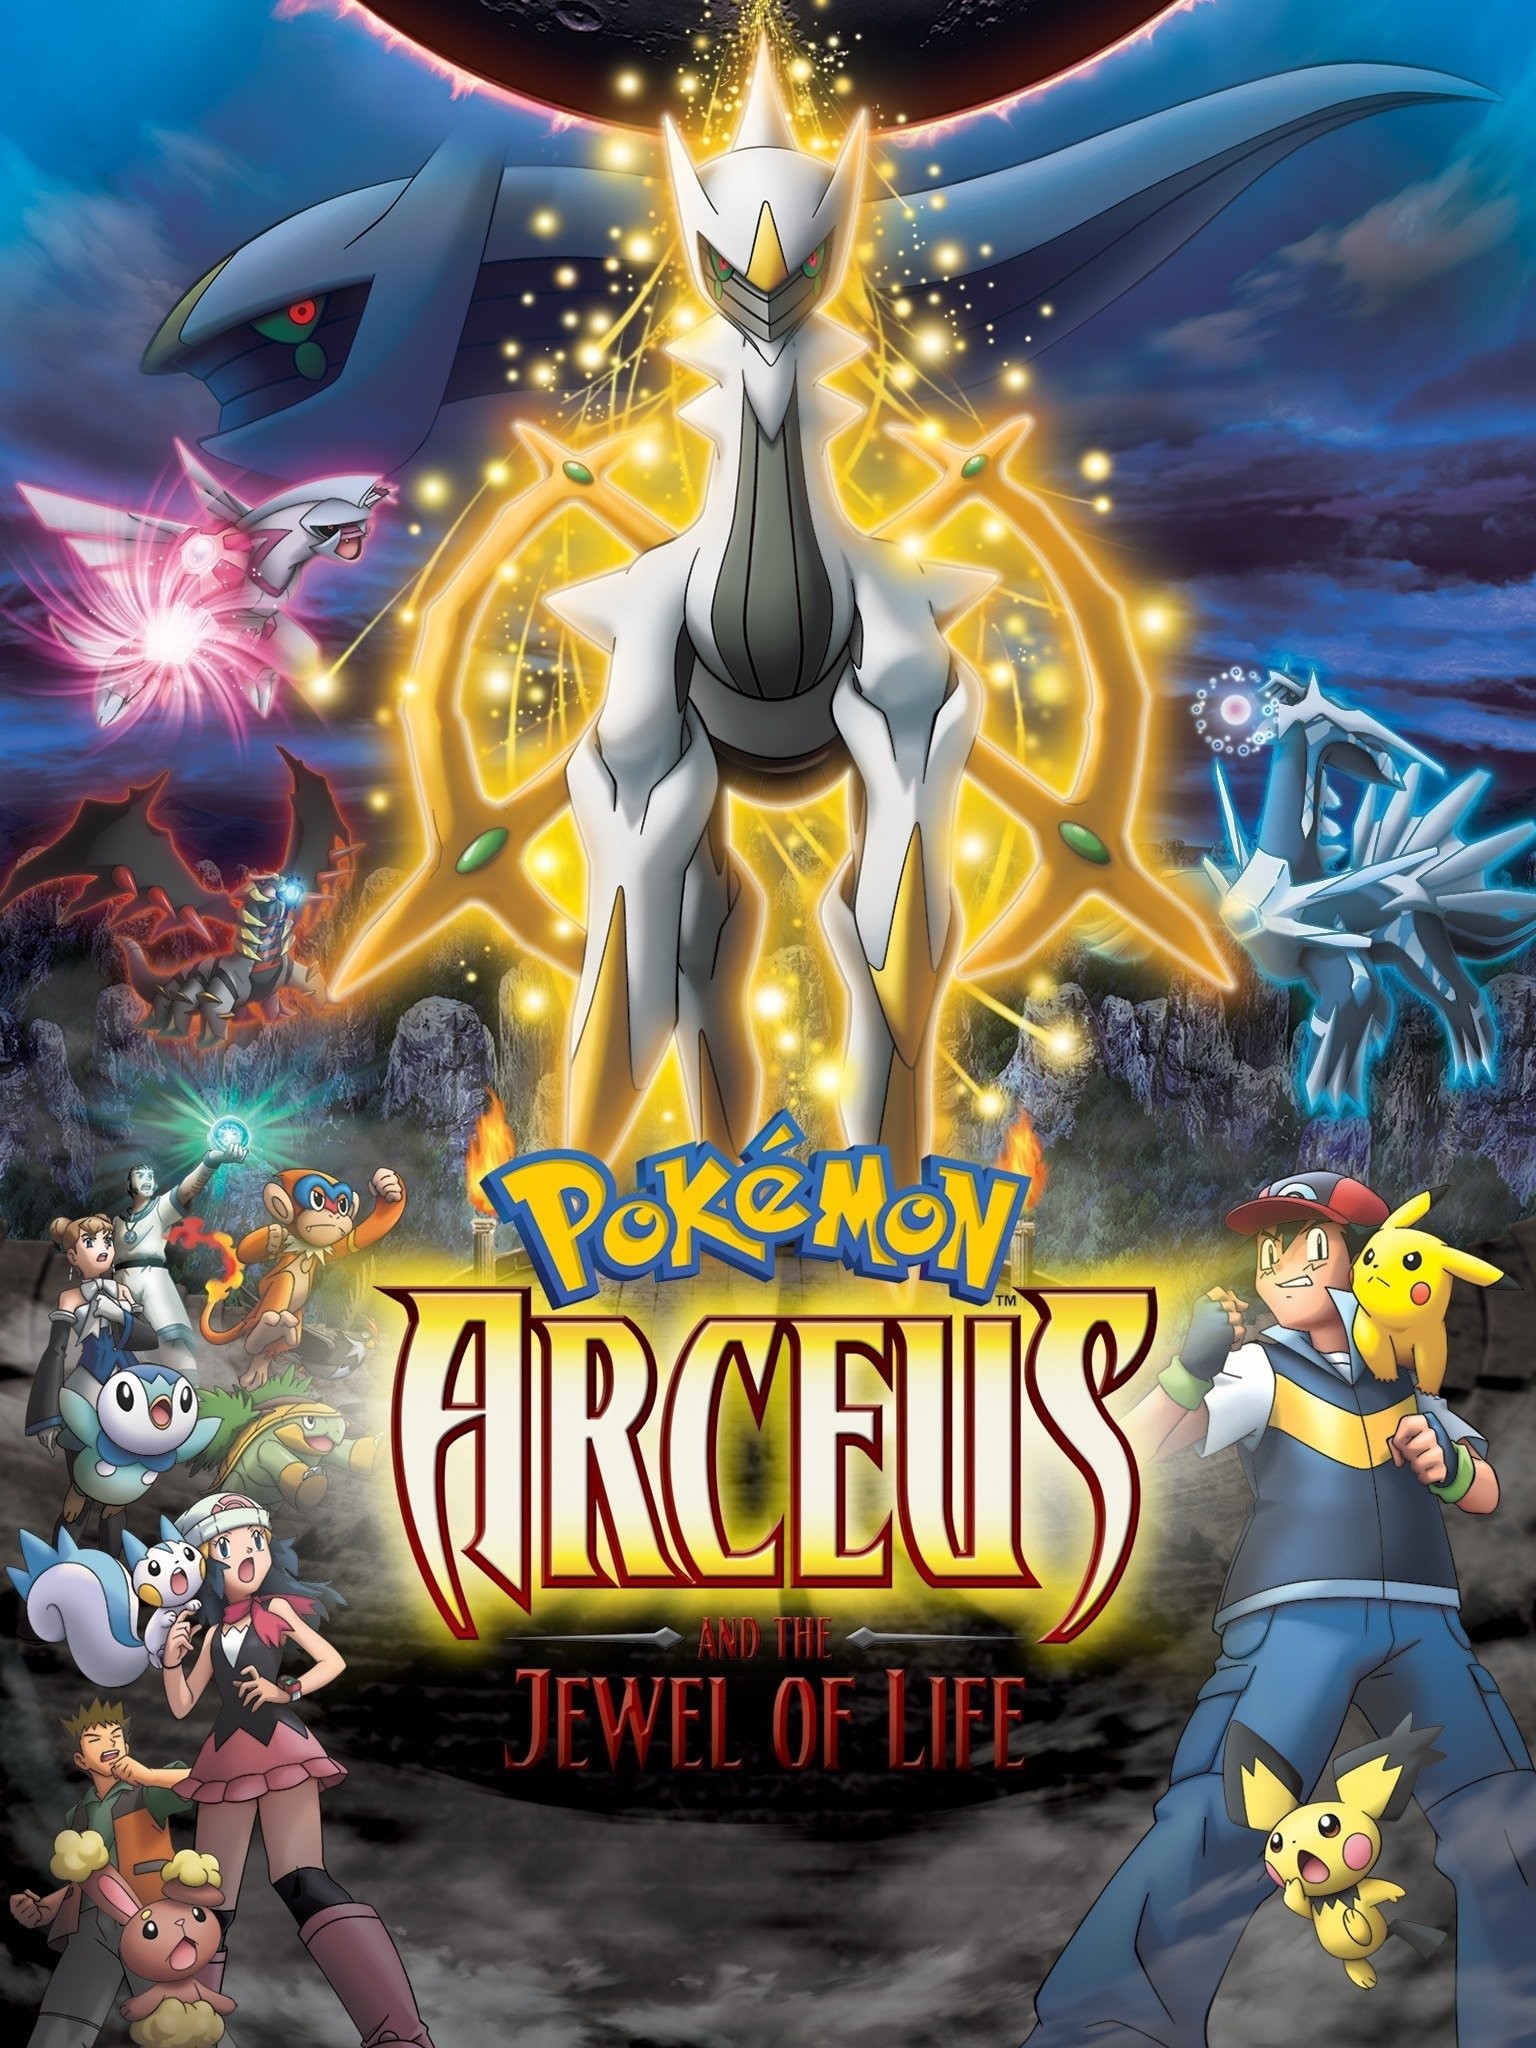 CBBC - Pokémon: Diamond and Pearl, Movies, Arceus and the Jewel of Life